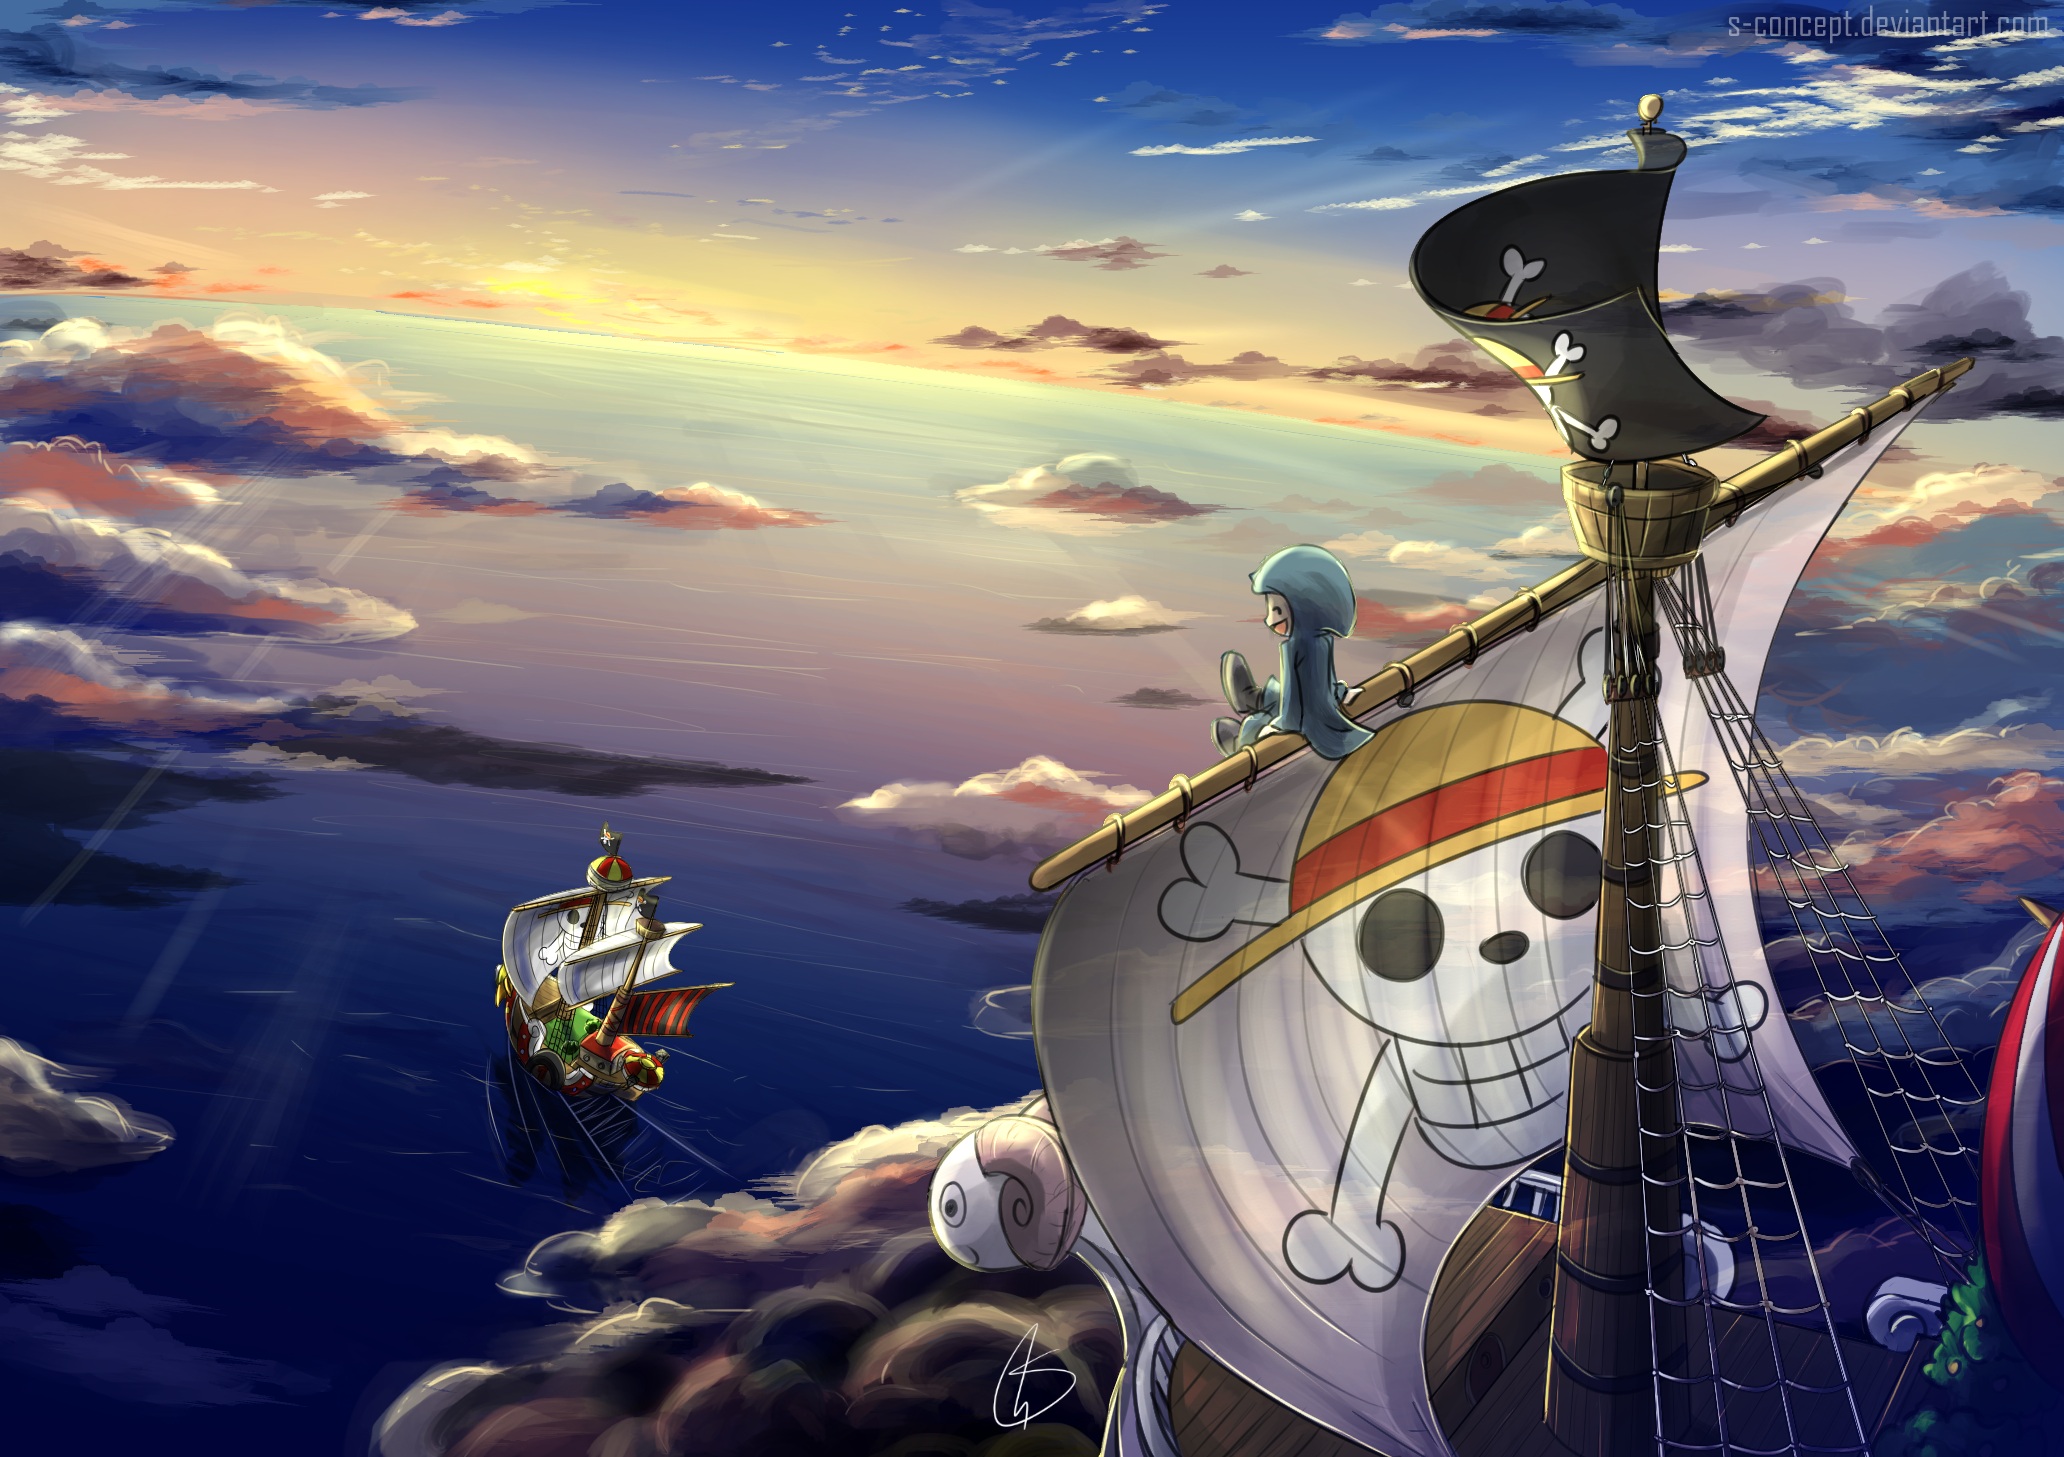 Sunny là chiếc tàu cực kỳ đặc biệt trong One Piece. Và giờ đây, bạn có thể đưa chiếc tàu đáng yêu này vào màn hình của mình với bức ảnh nền tuyệt đẹp này. Hãy tận hưởng khoảnh khắc yên bình trên tàu Sunny cùng với những nhân vật quen thuộc trong One Piece.